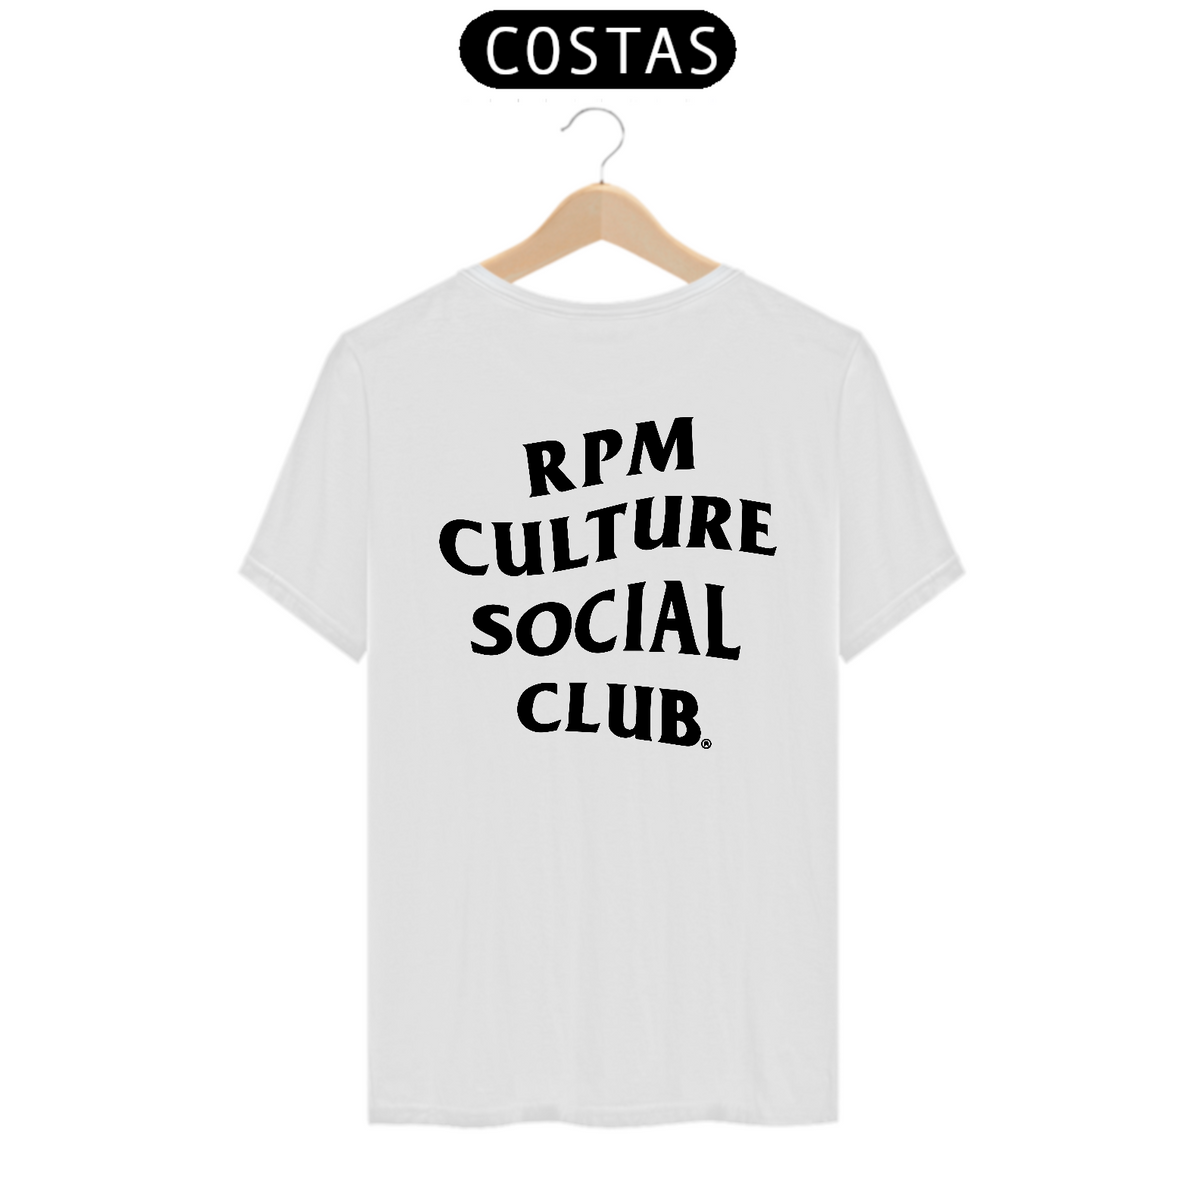 Nome do produto: RPM CULTURE SOCIAL CLUB